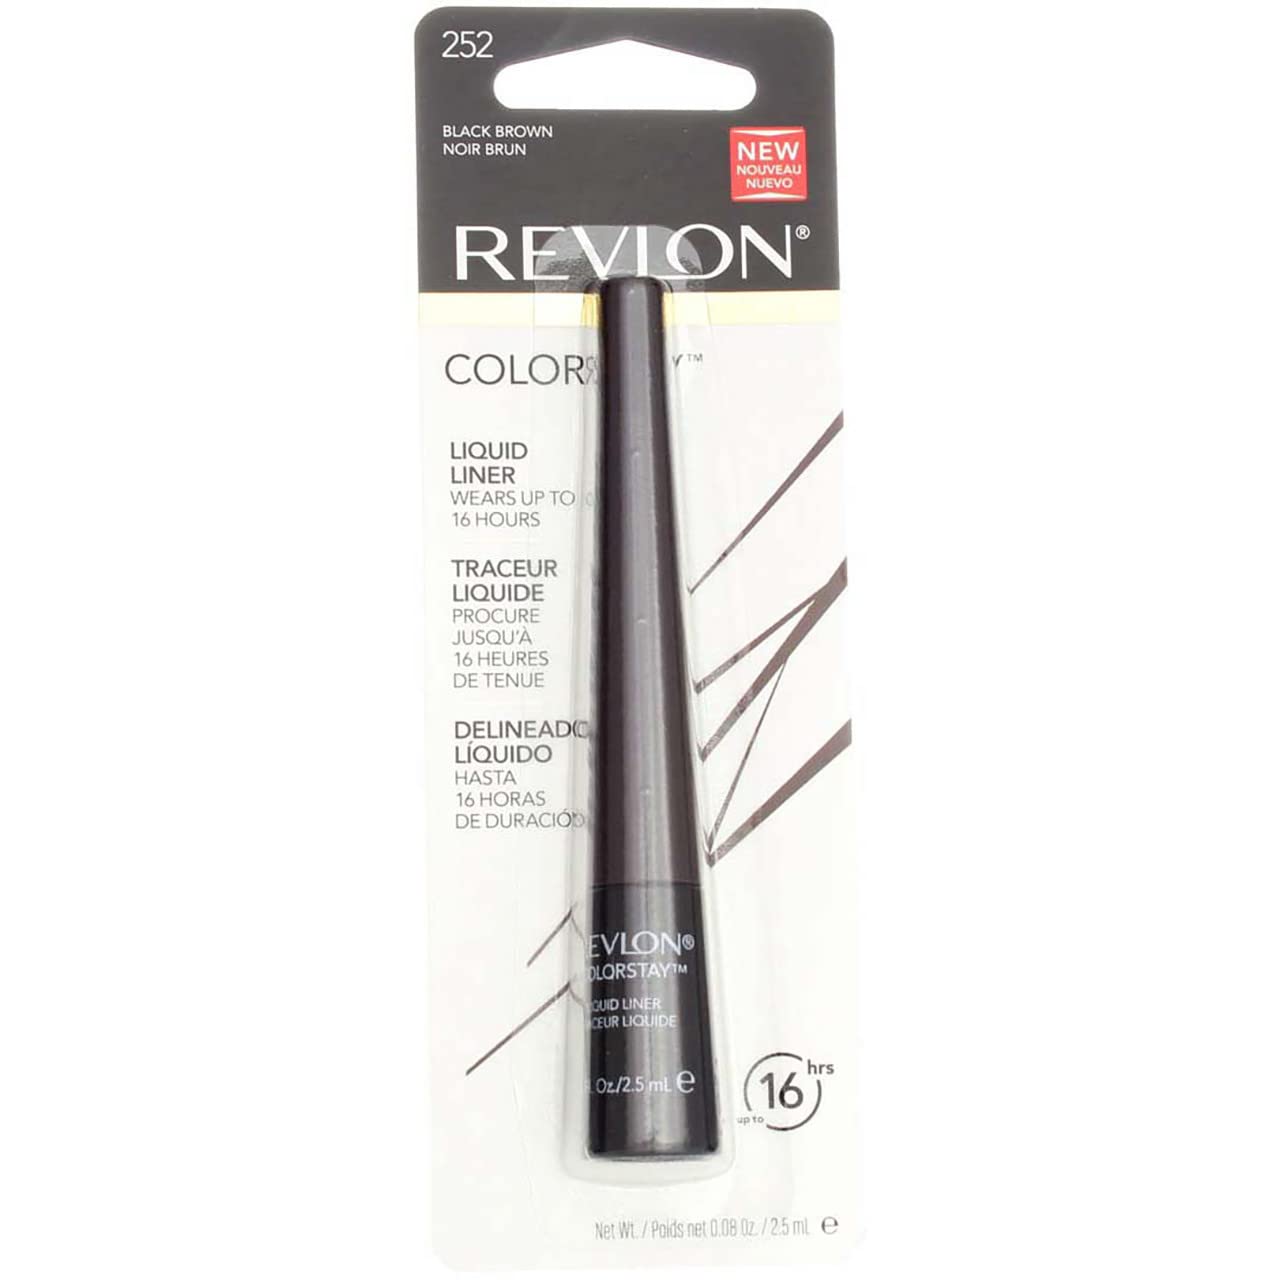 Revlon ColorStay Liquid Liner Eye Makeup, Black-Brown [252], 0.08  (Pack of 6)